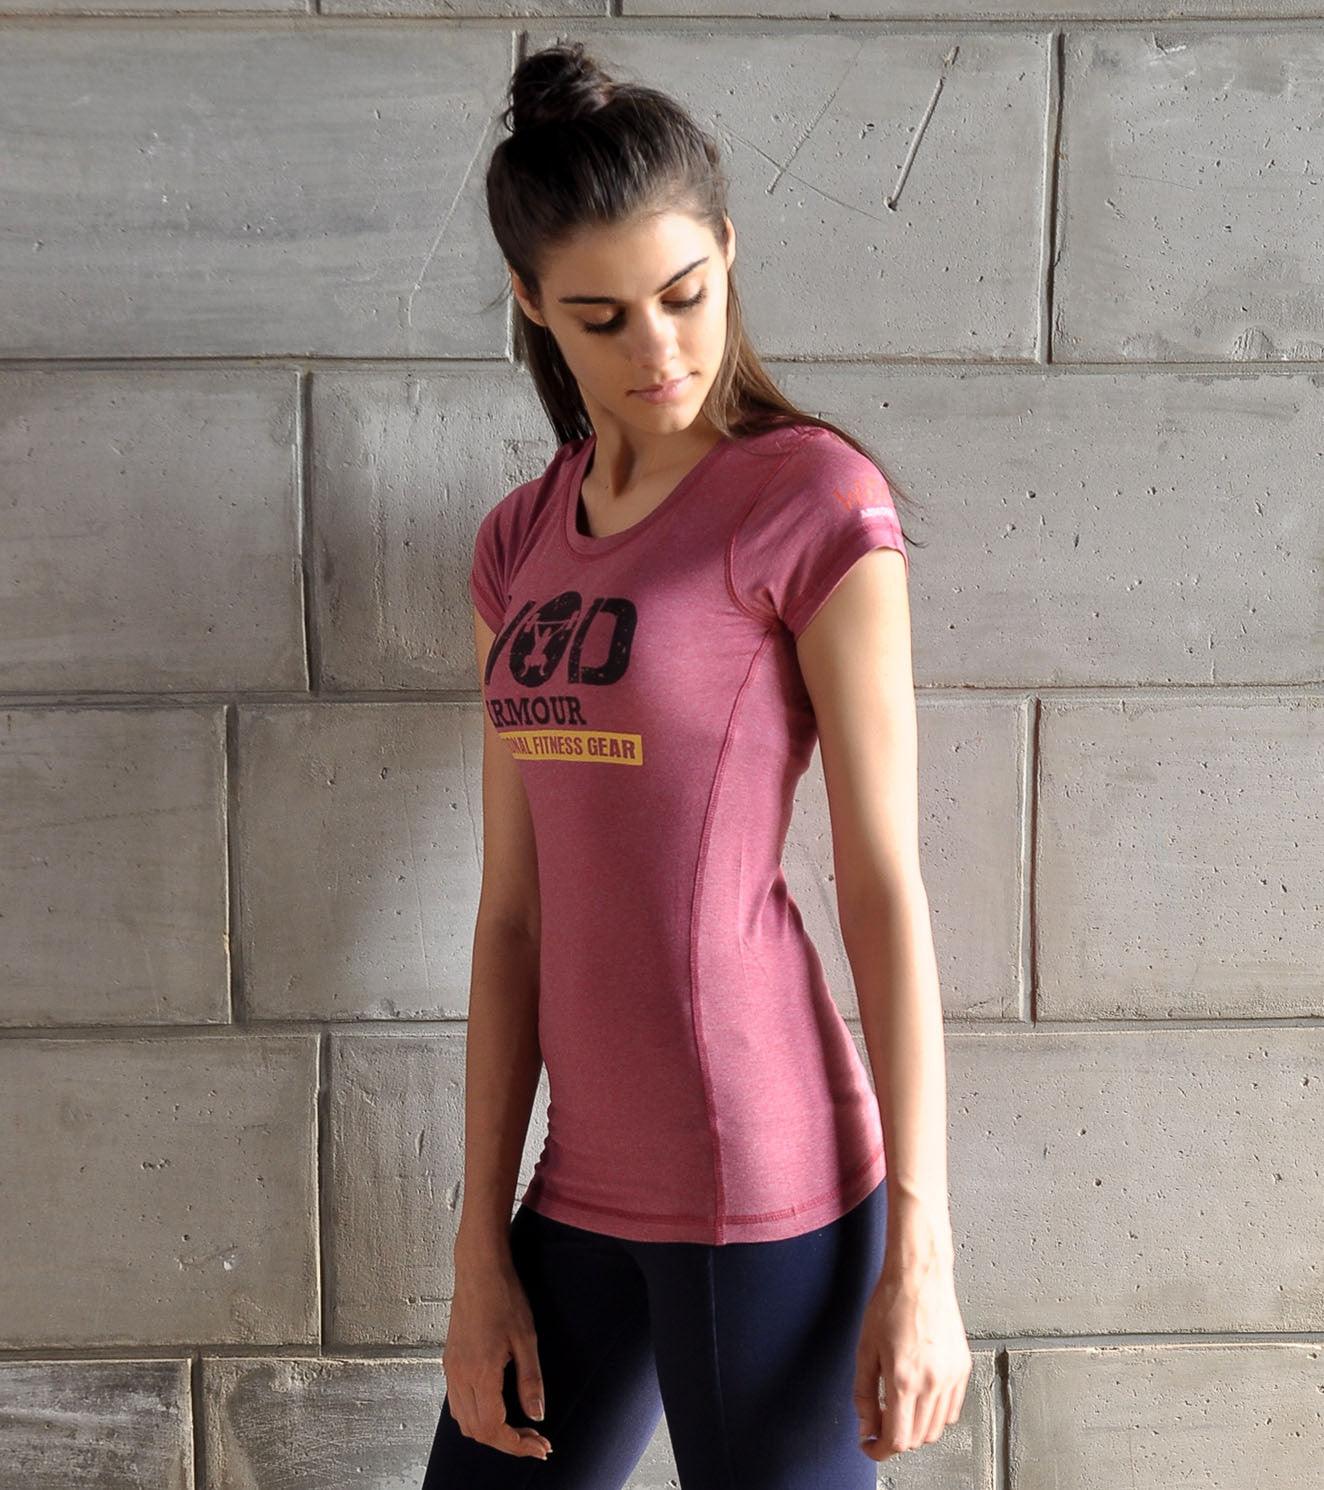 Women's Classic Training T-shirt - wodarmour